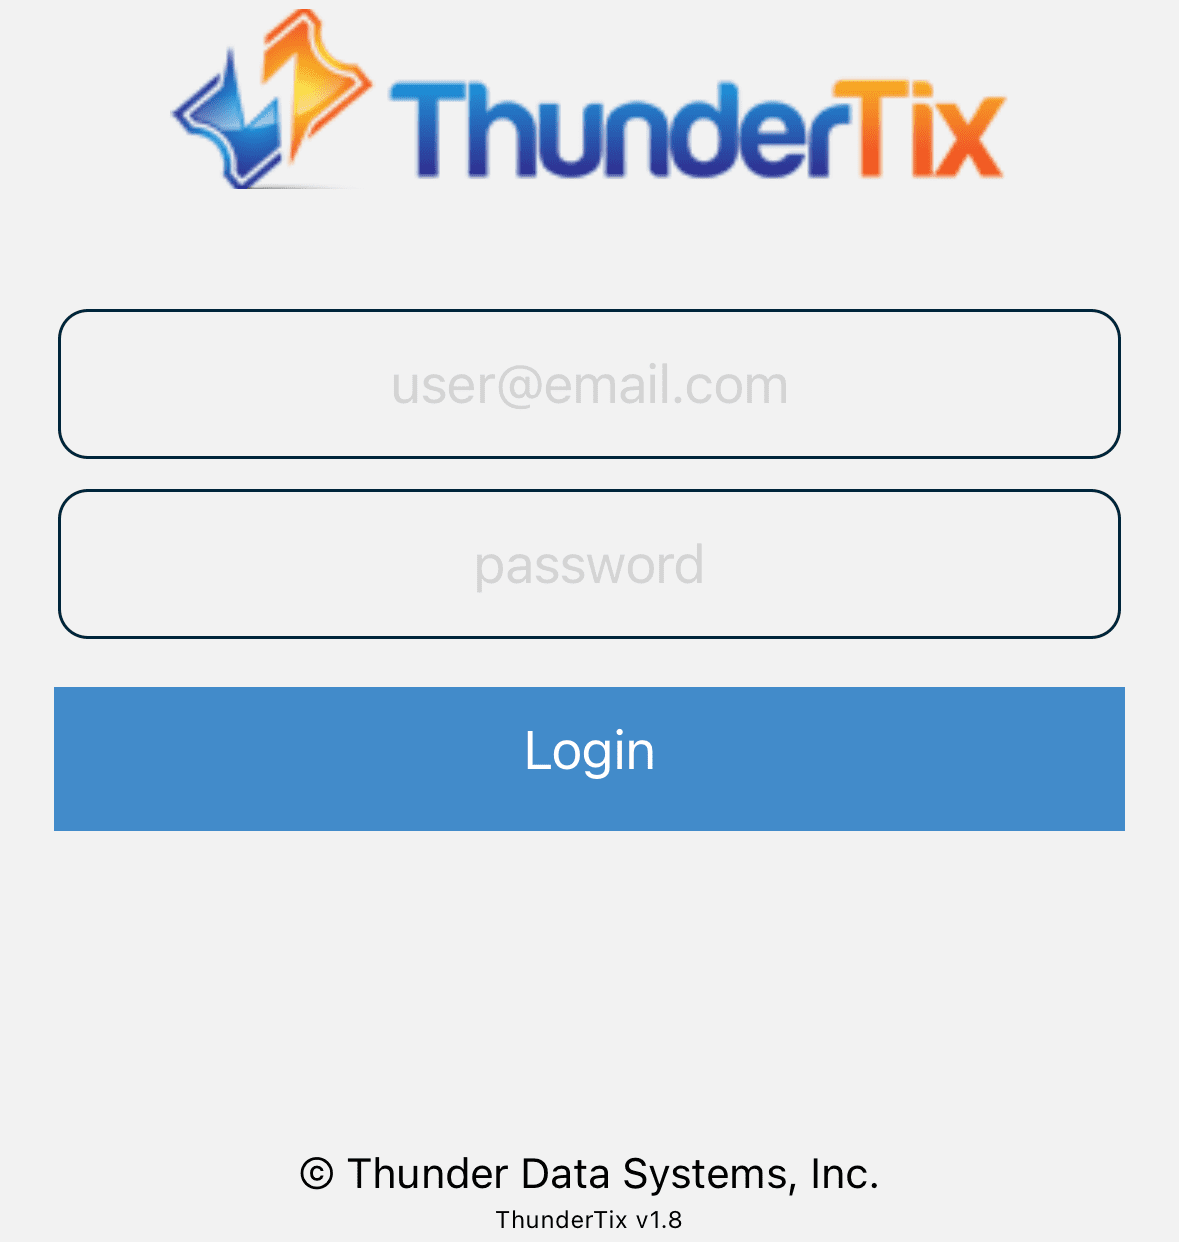 Login screen for ThunderTix app